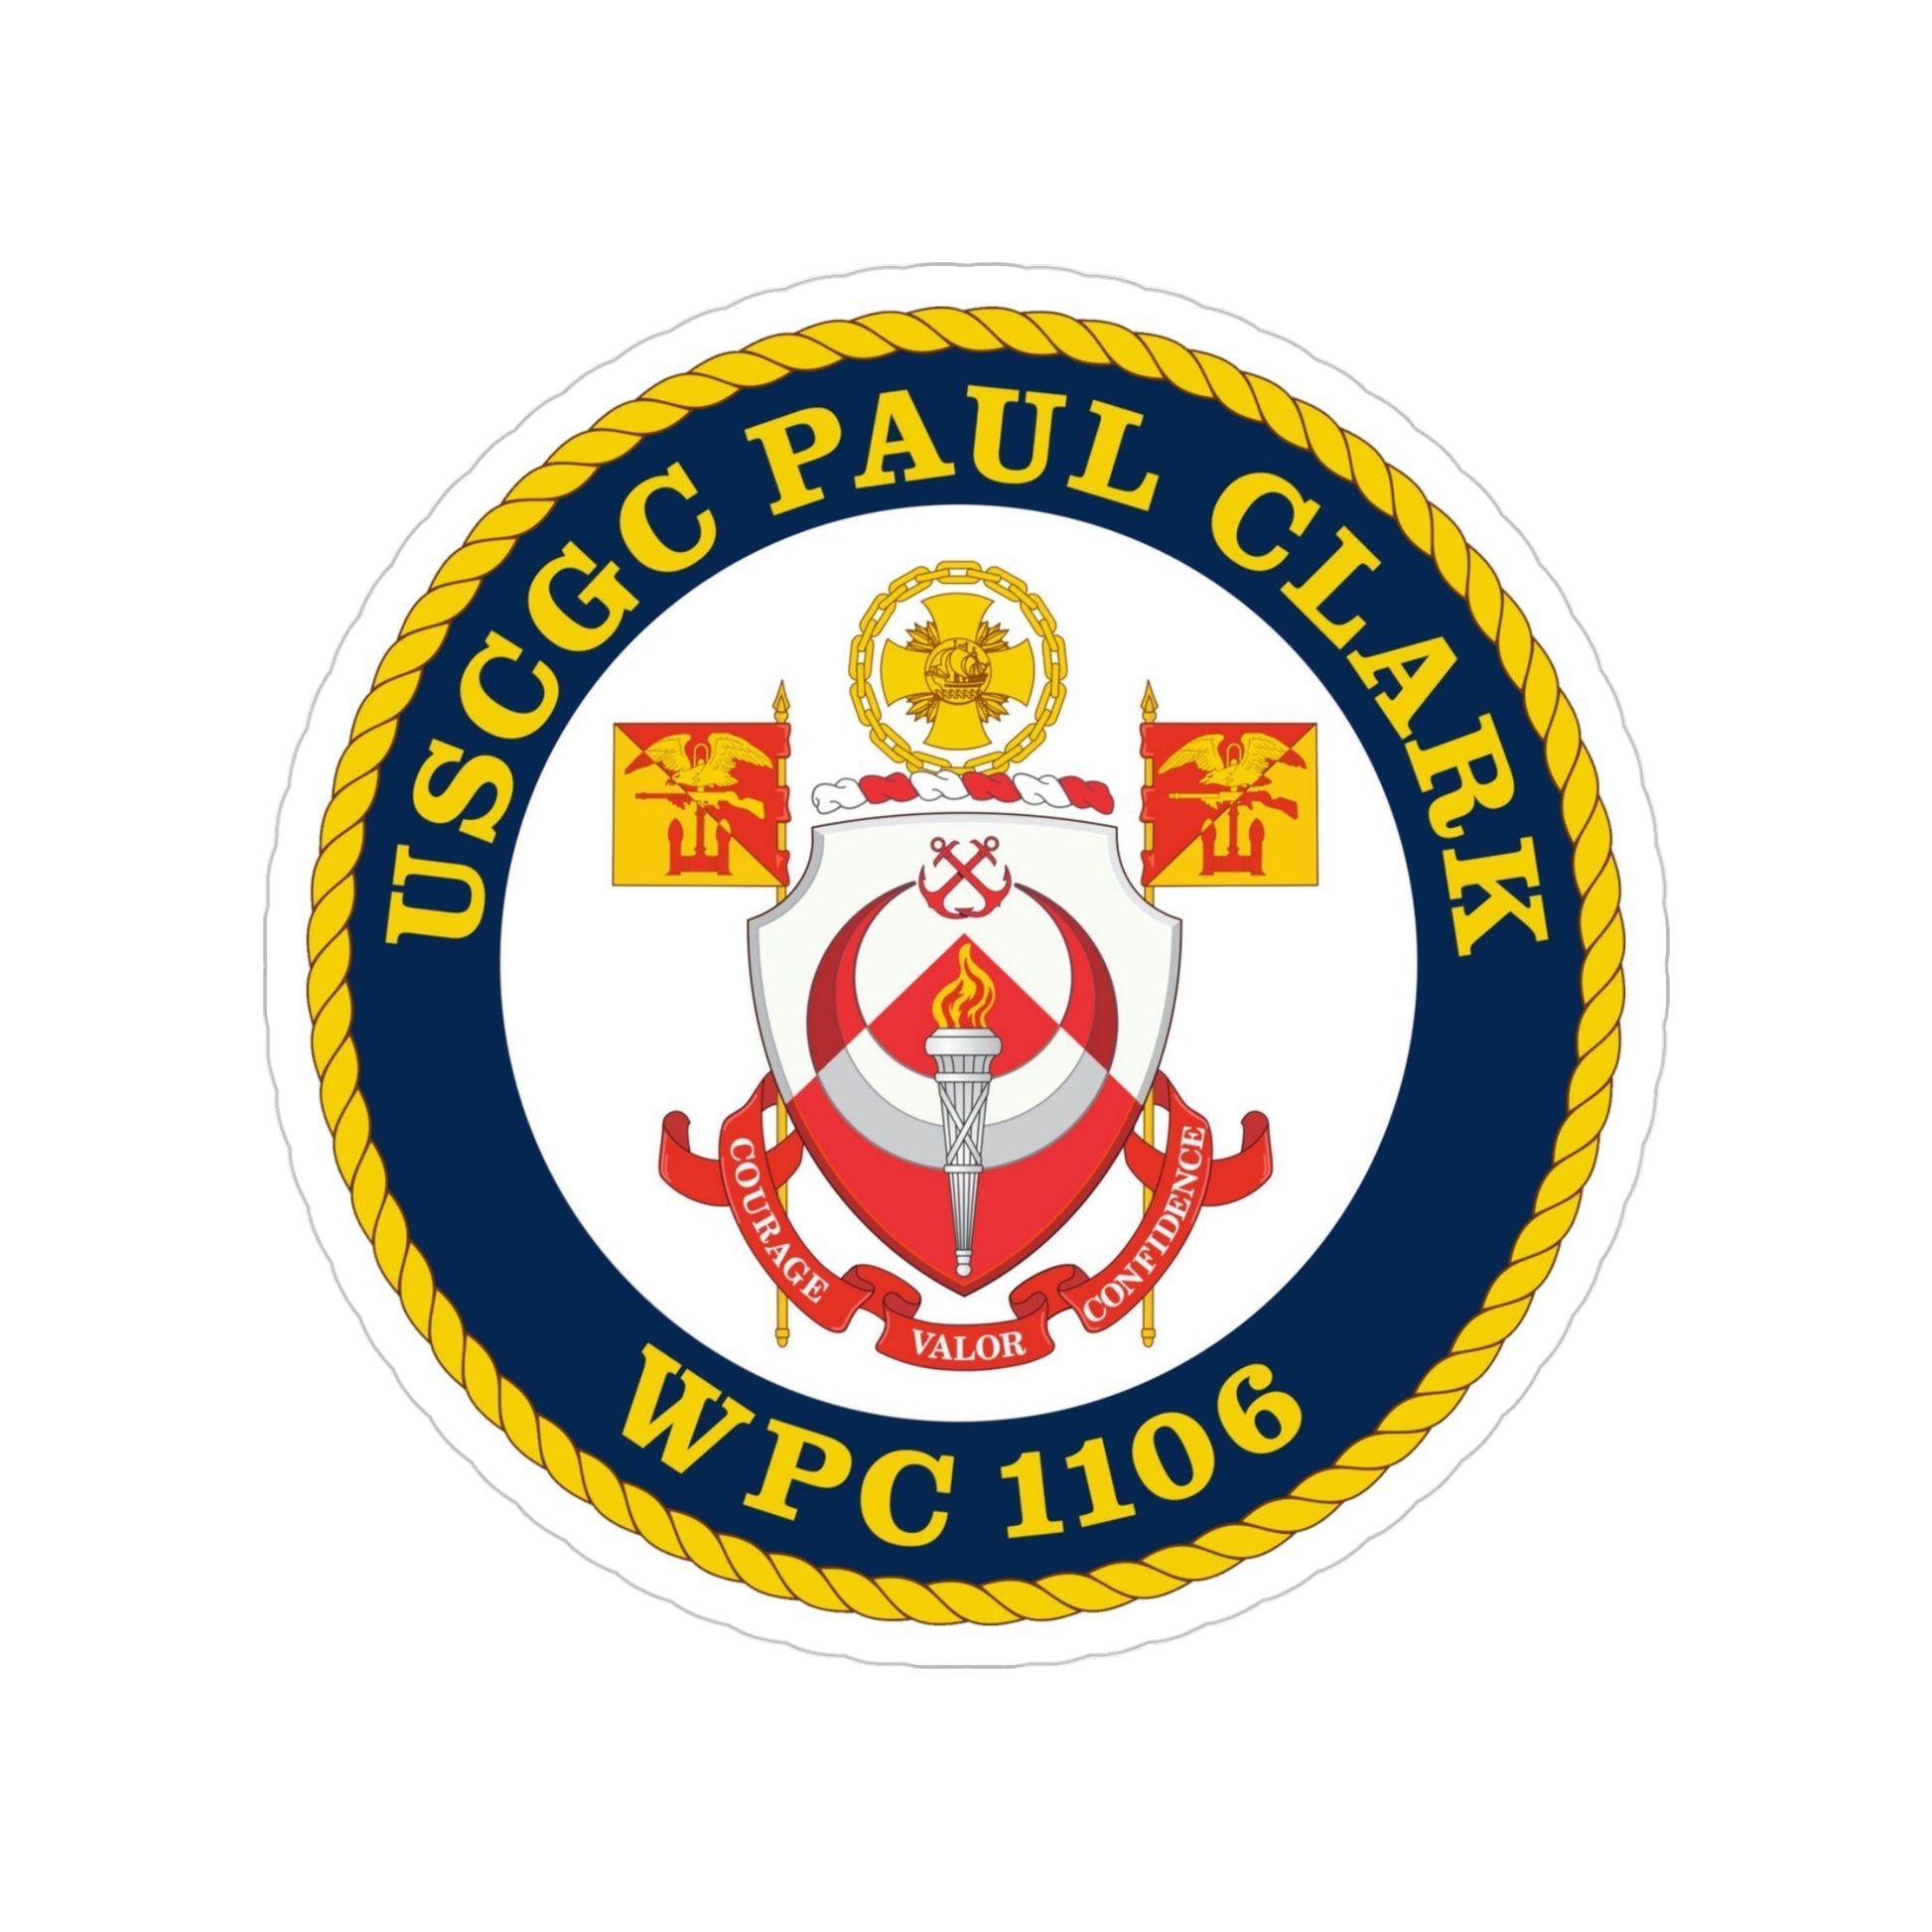 USCGC Paul Clark WPC 1106 (U.S. Coast Guard) Transparent STICKER Die-Cut Vinyl Decal-4 Inch-The Sticker Space